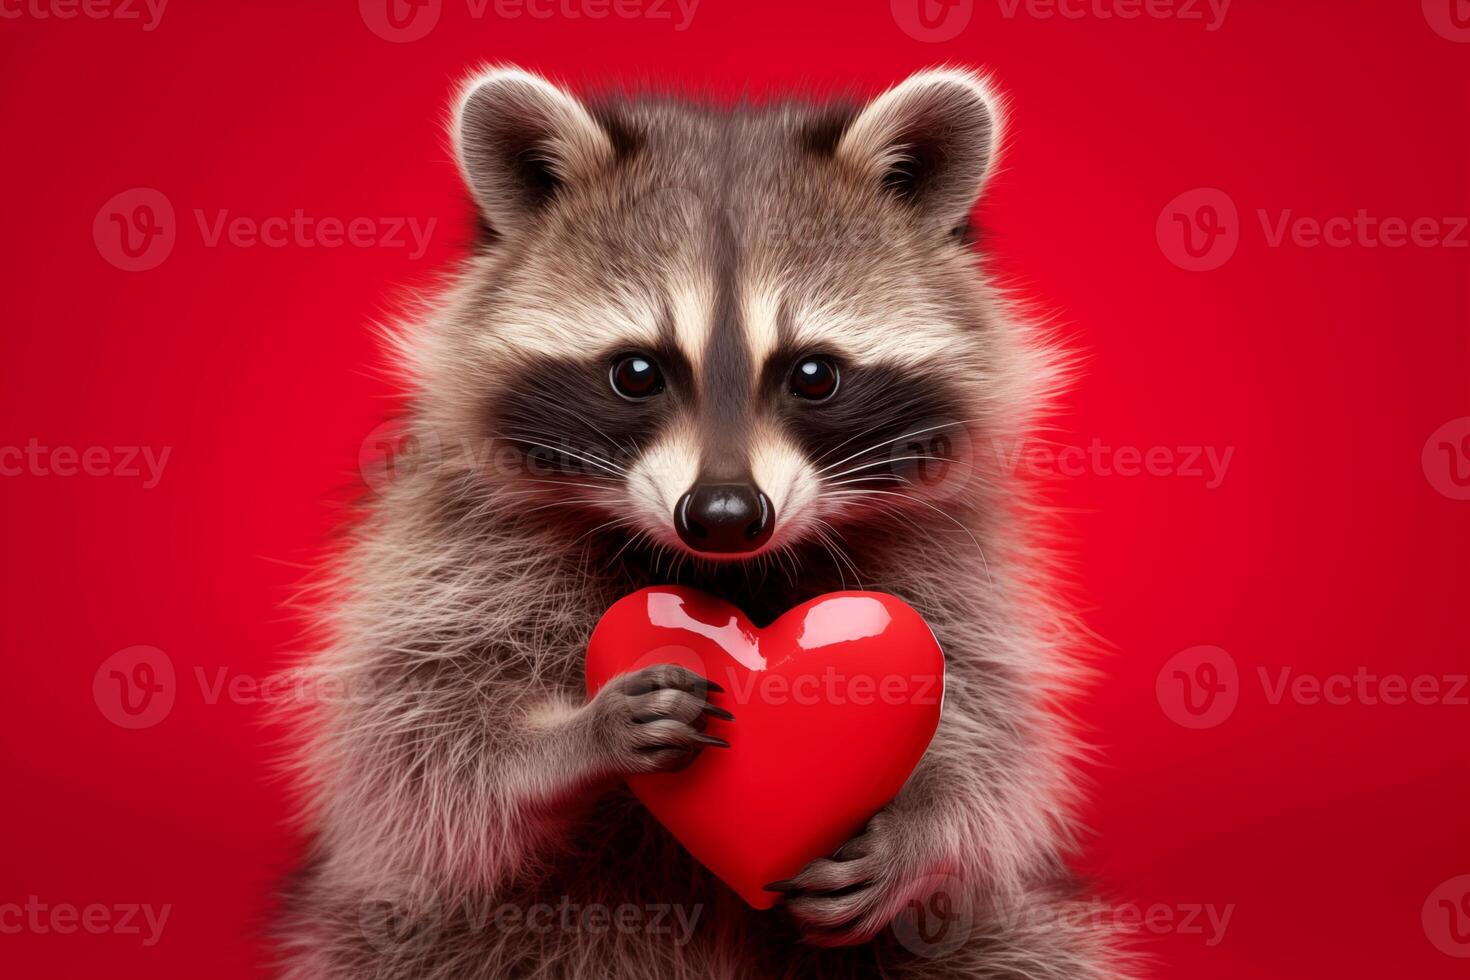 Lycklig hjärtans dag, valentines dag, kärlek, firande begrepp hälsning kort med text - söt racoon innehav en röd hjärta , isolerat på röd bakgrund foto